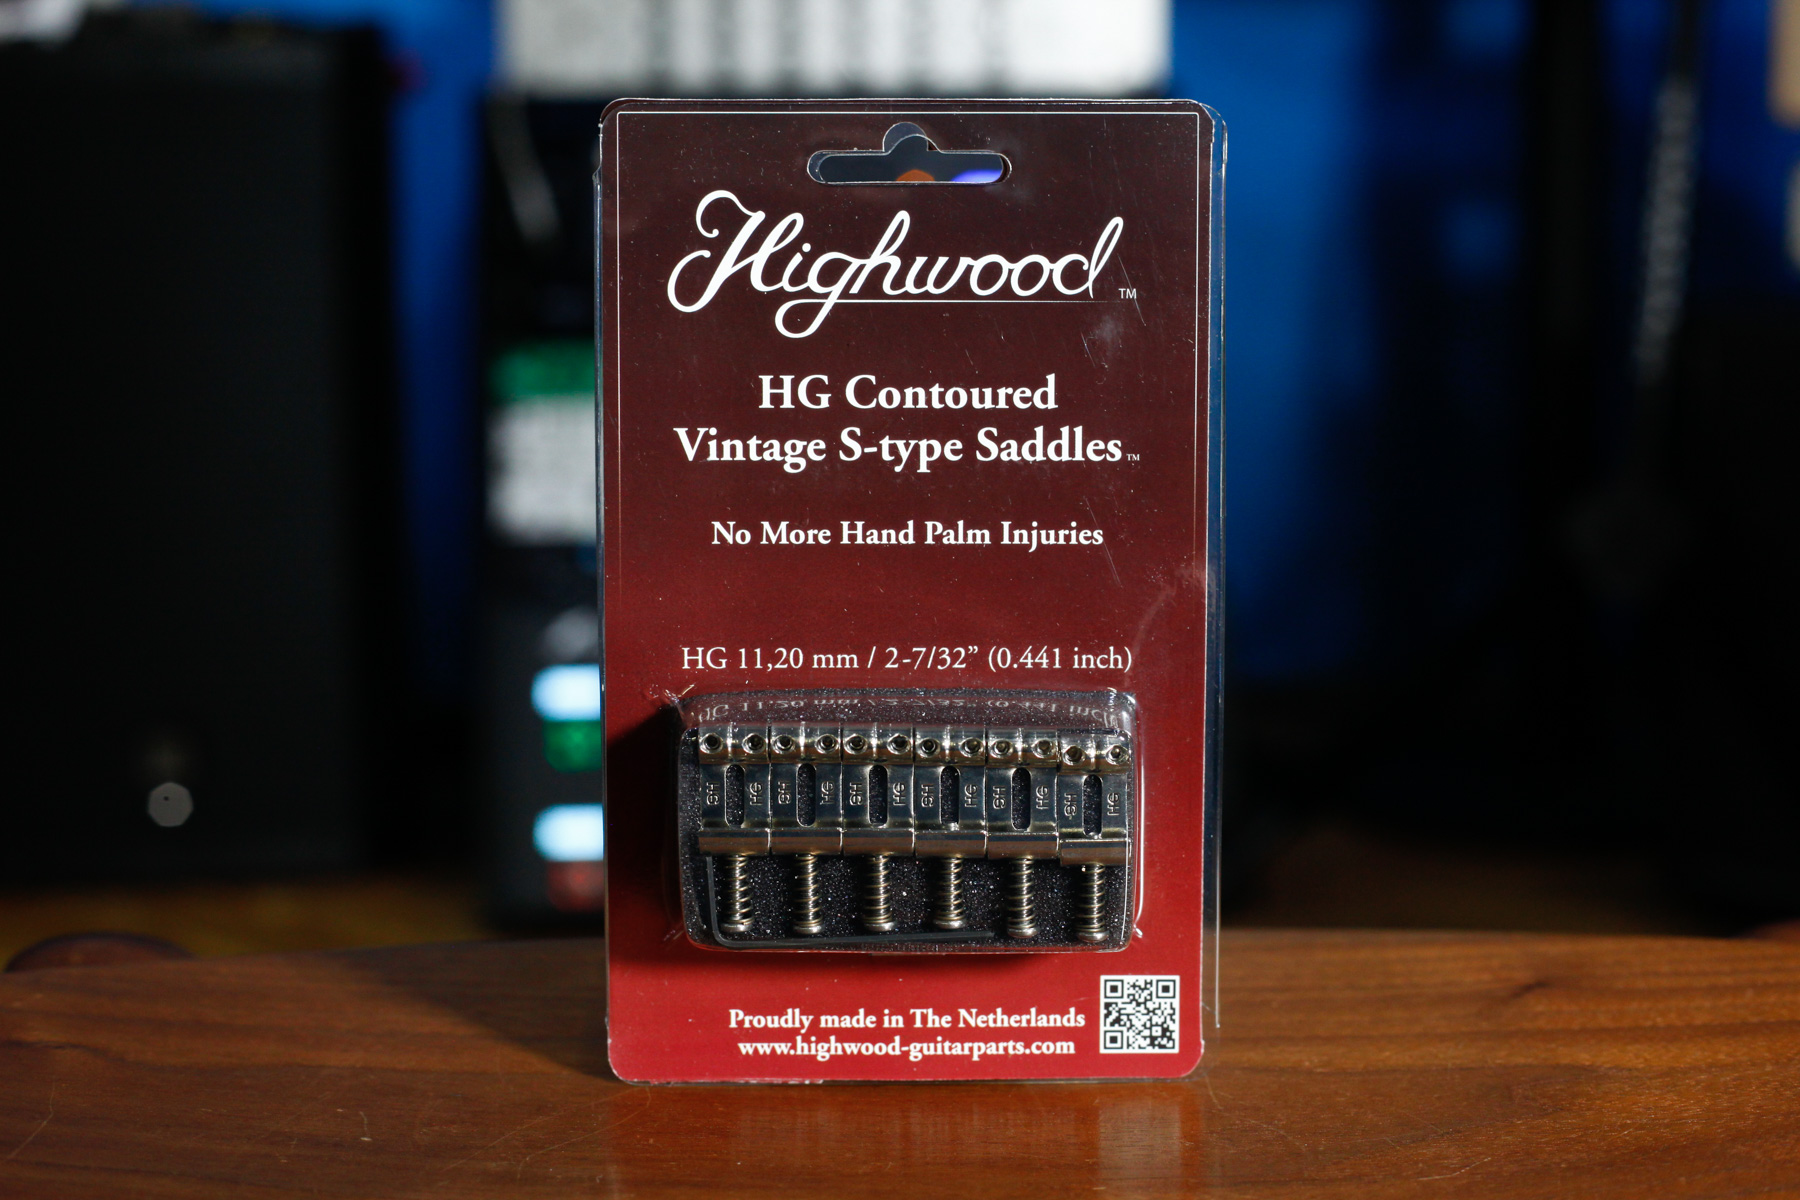 Highwood HG Contoured Vintage S-type Saddle｜11.20mm Nickel Gross